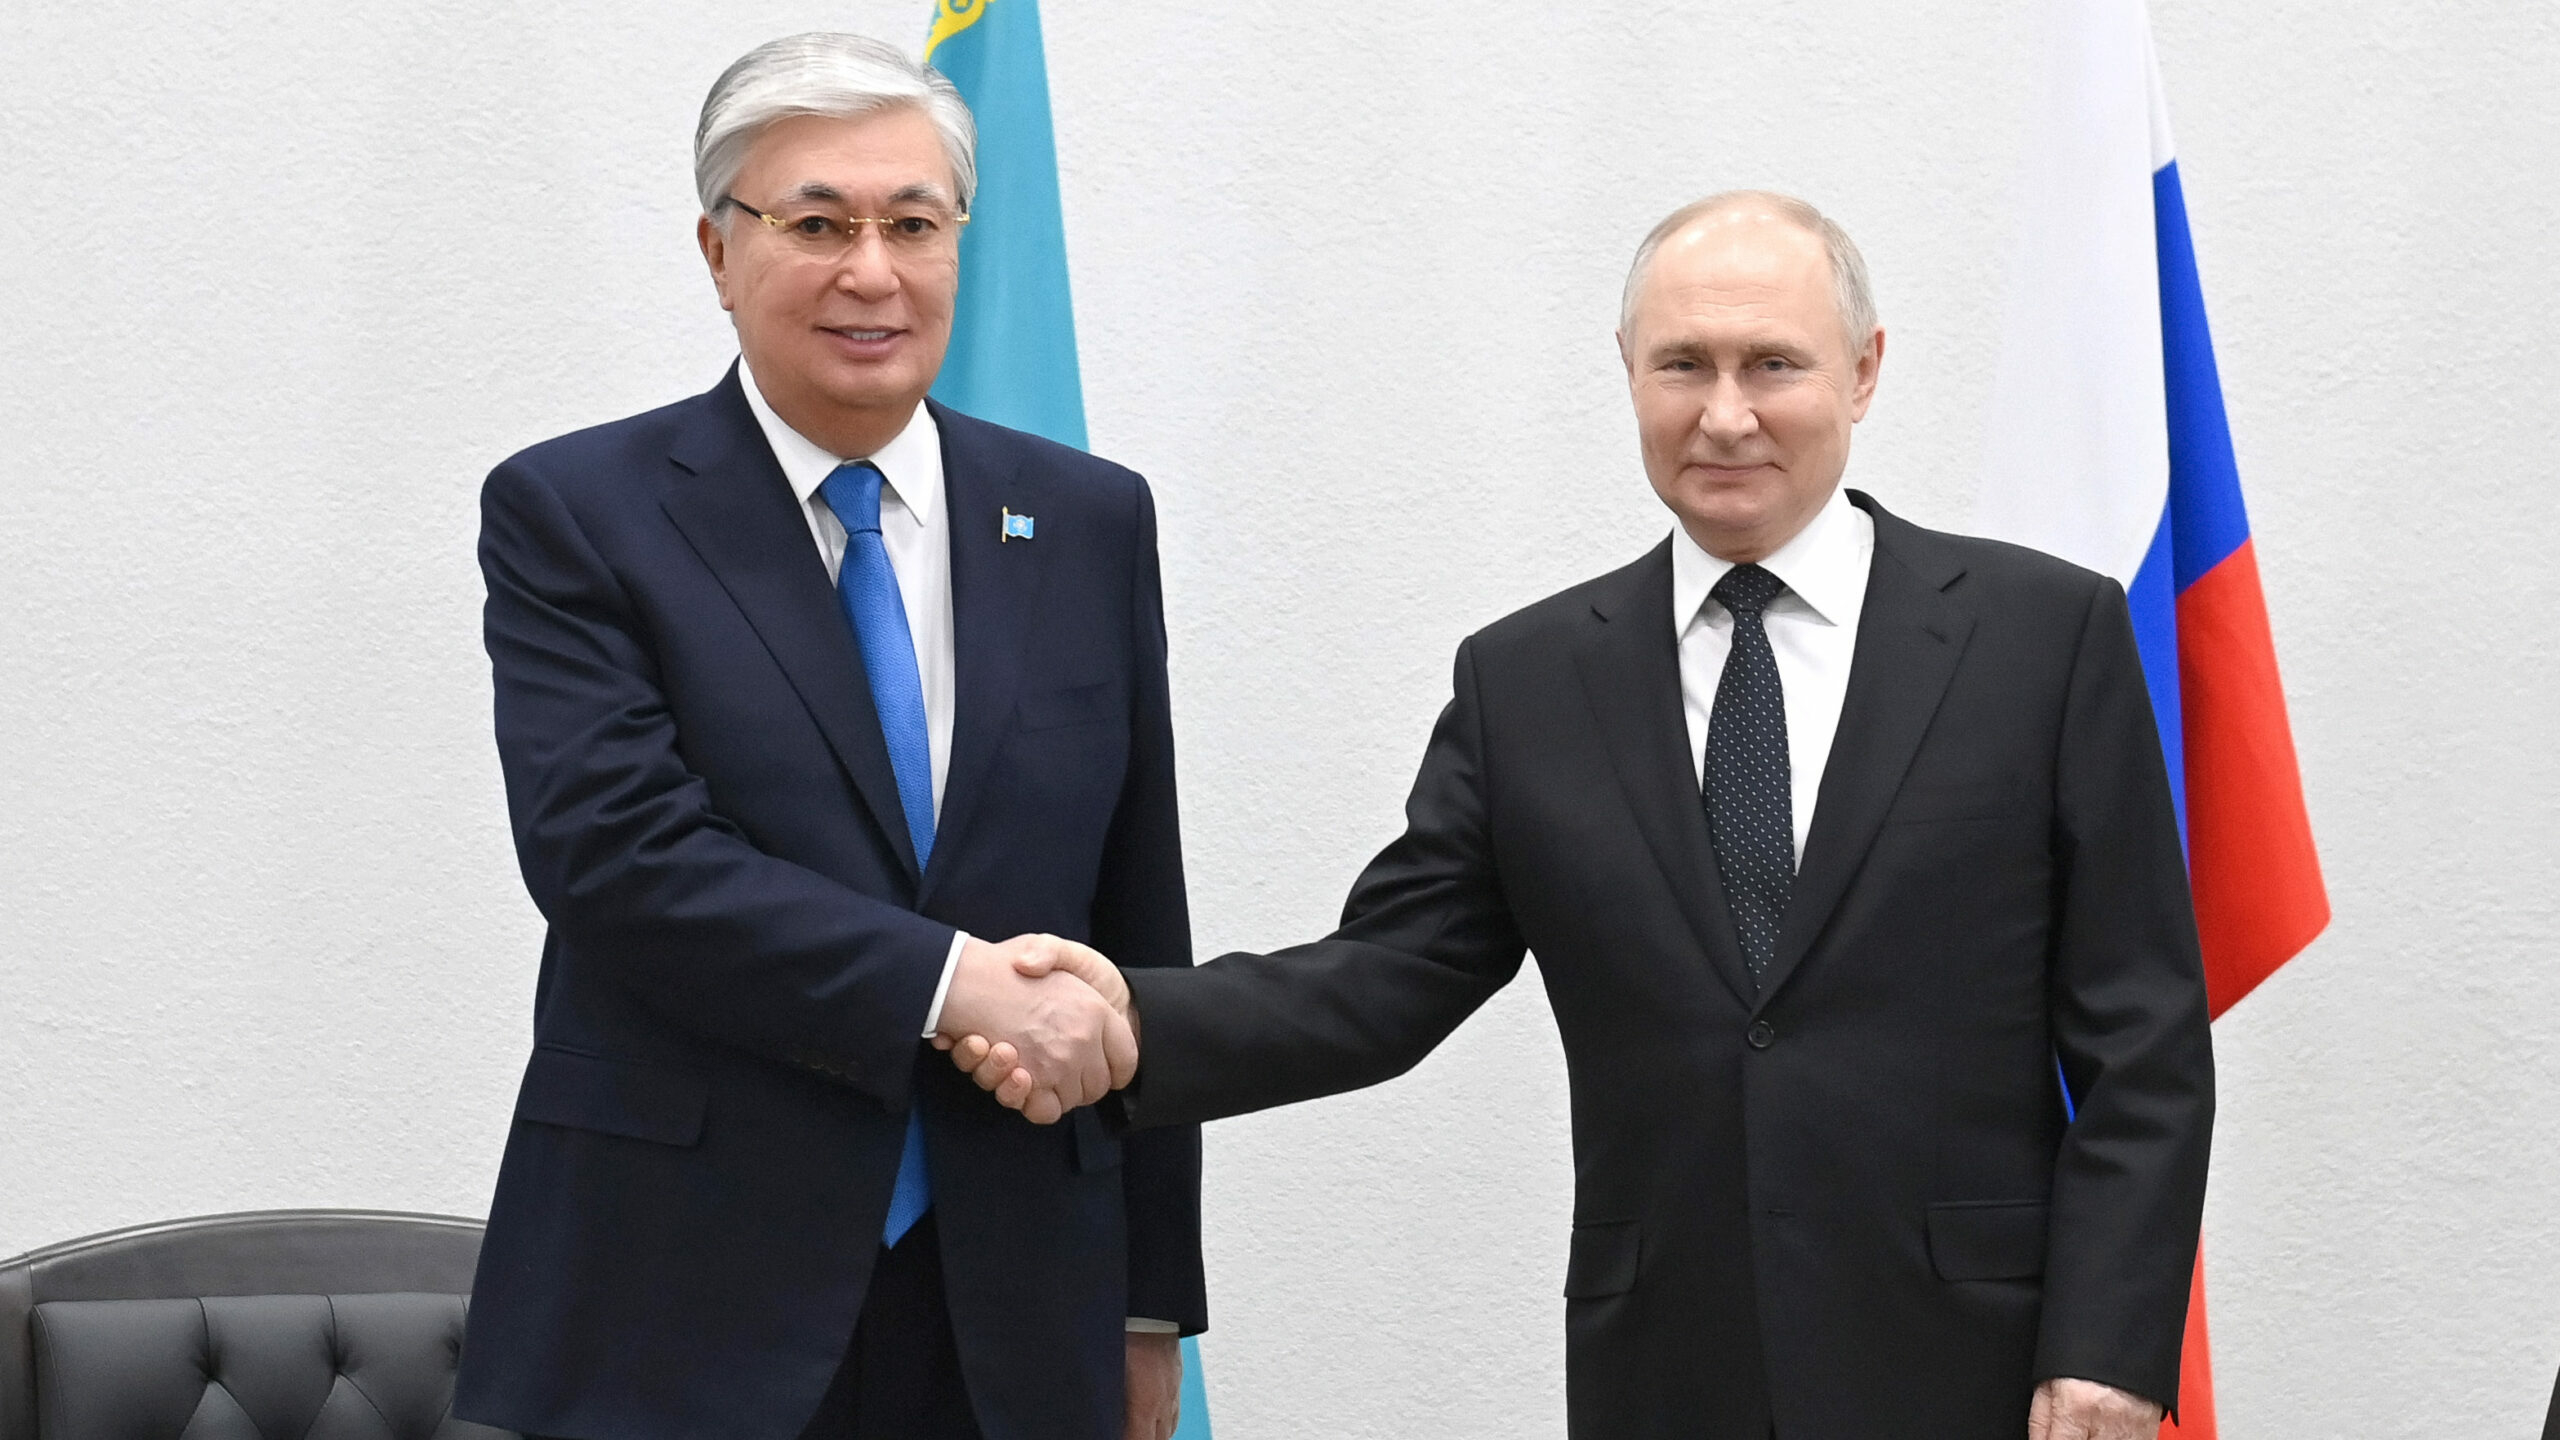 NetEase: Токаев преподнес сюрприз, Путин получил хорошие новости из Казахстана